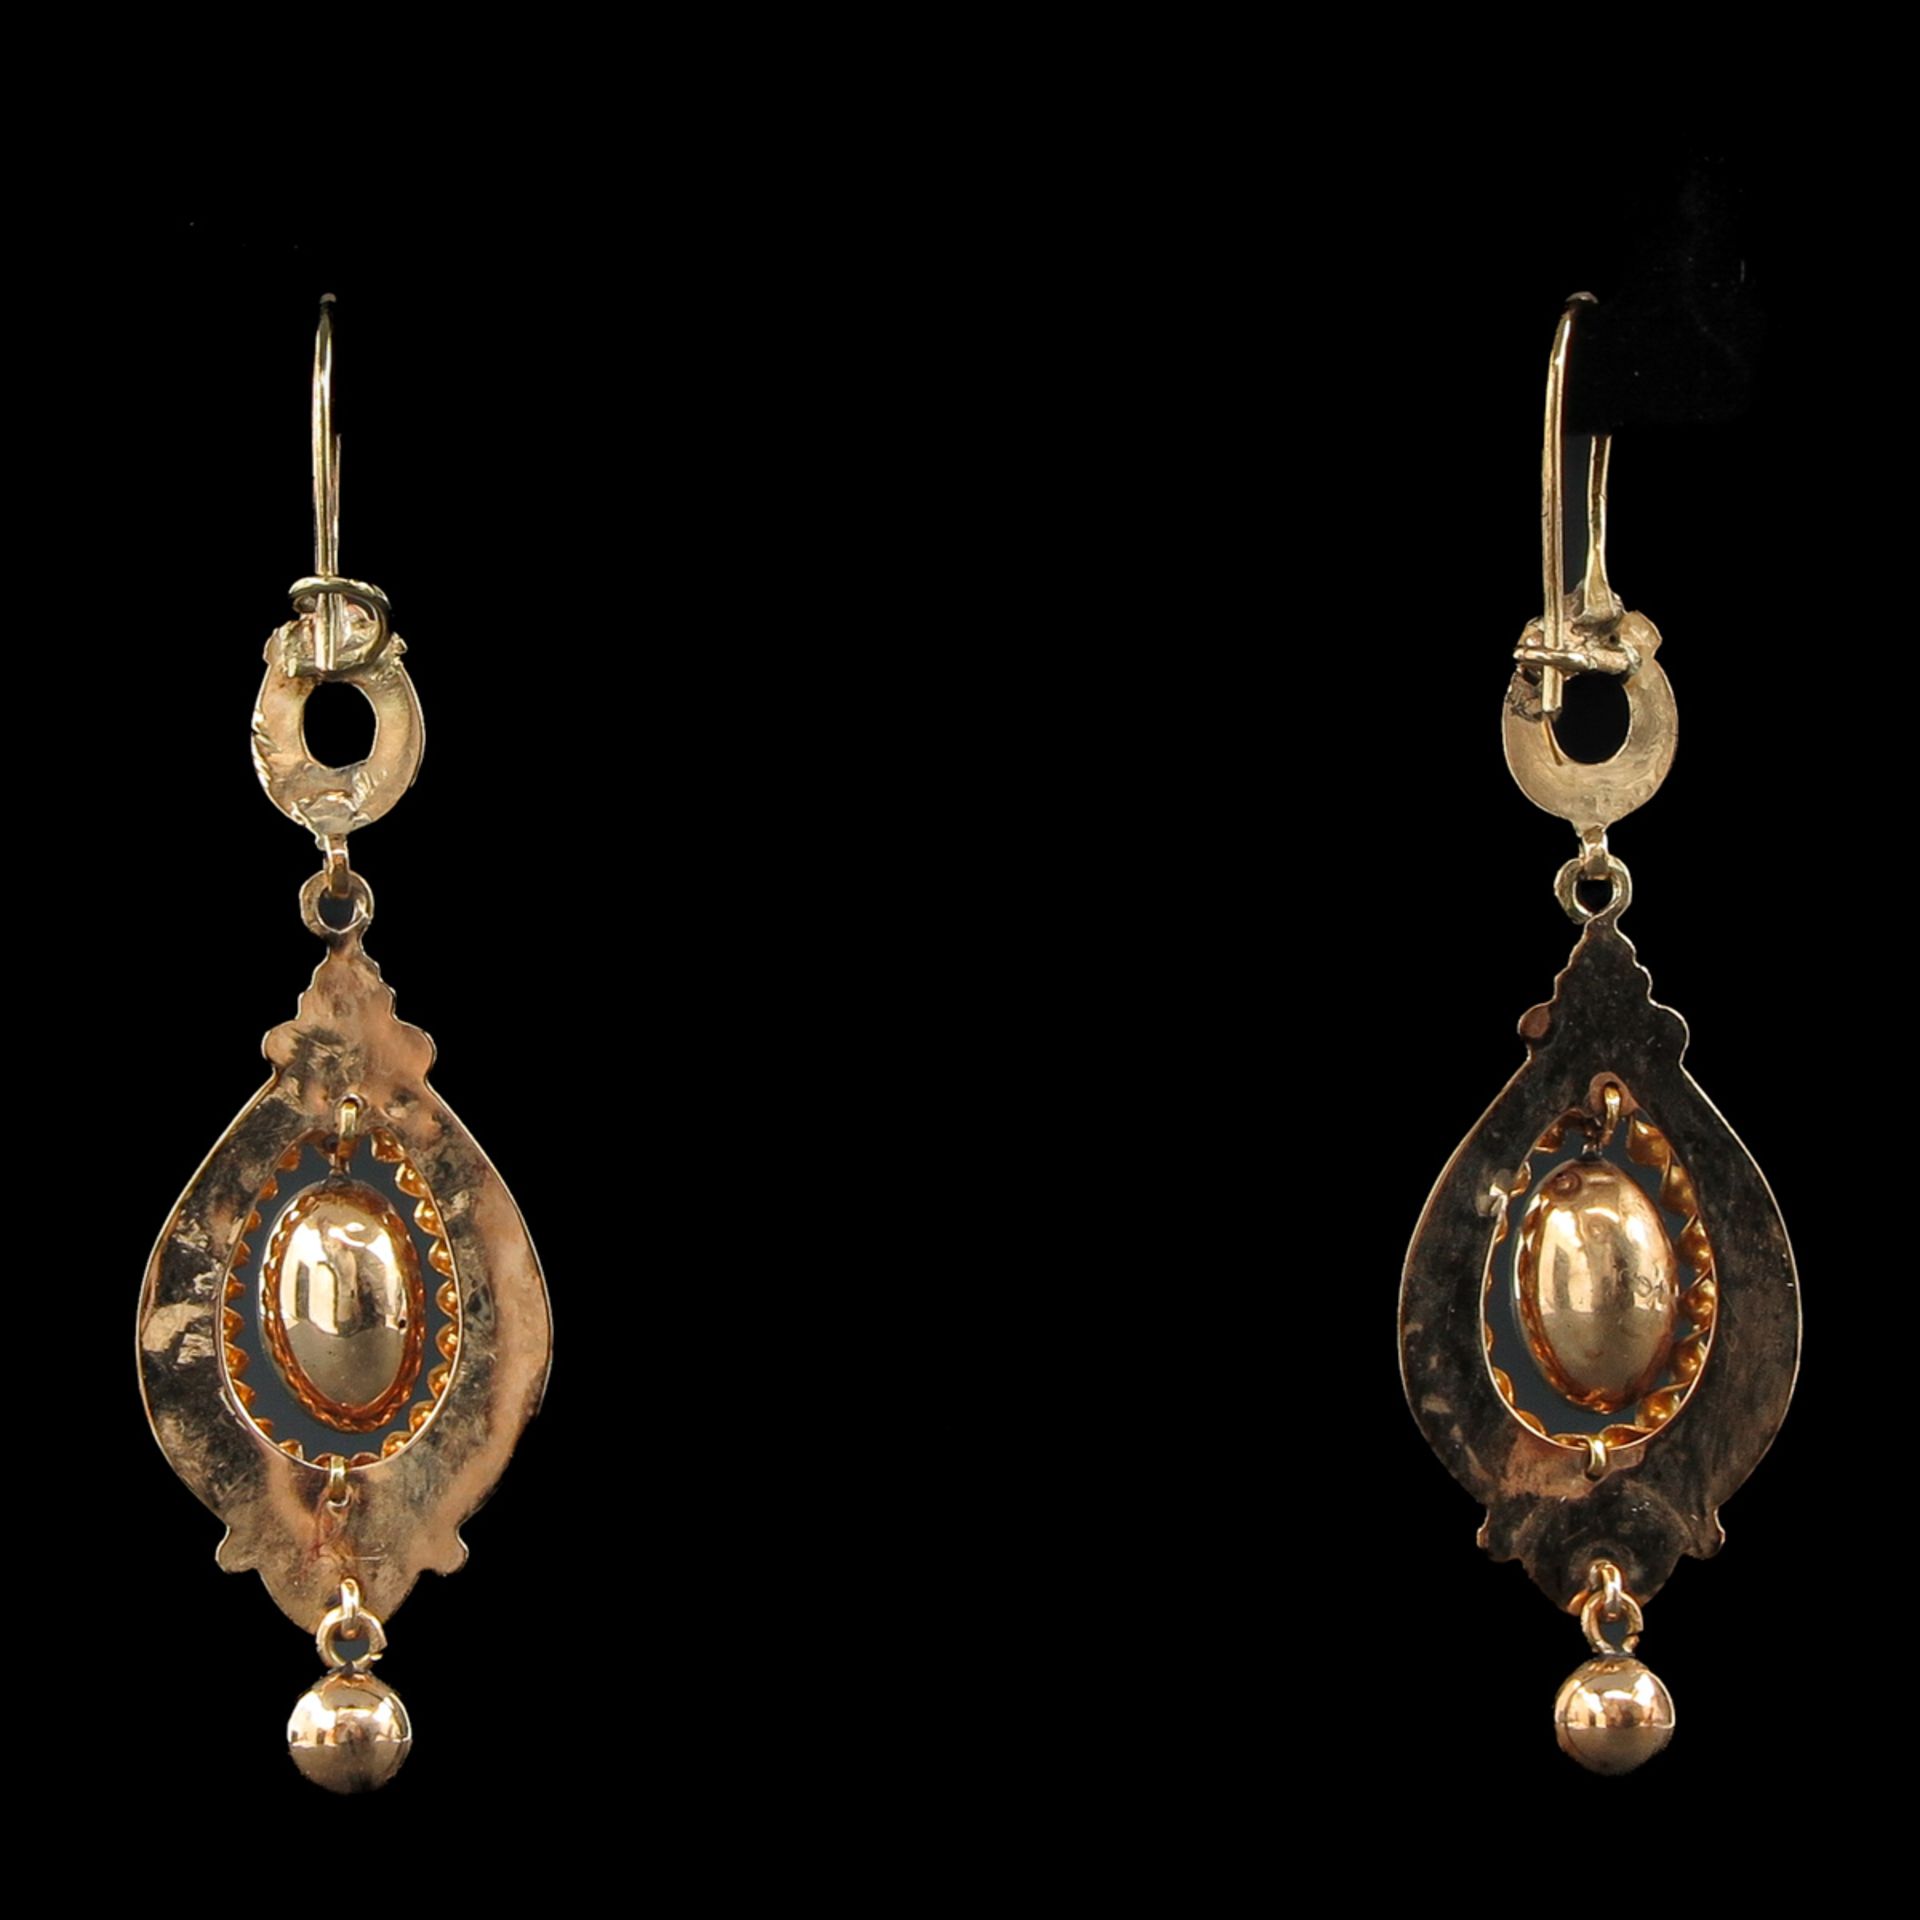 A Pair of 14KG Earrings - Image 2 of 4